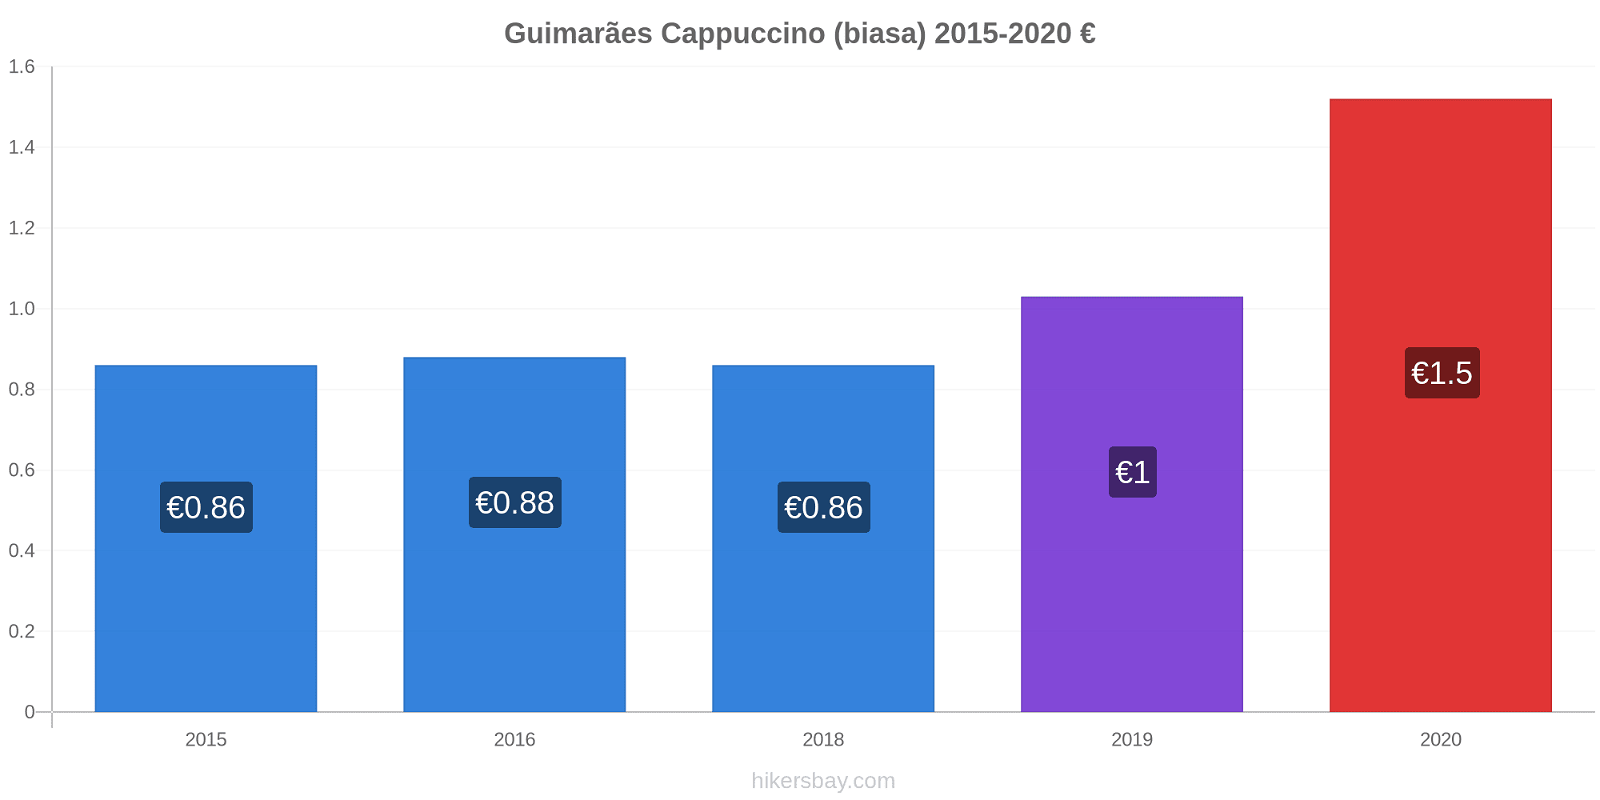 Guimarães perubahan harga Cappuccino (biasa) hikersbay.com